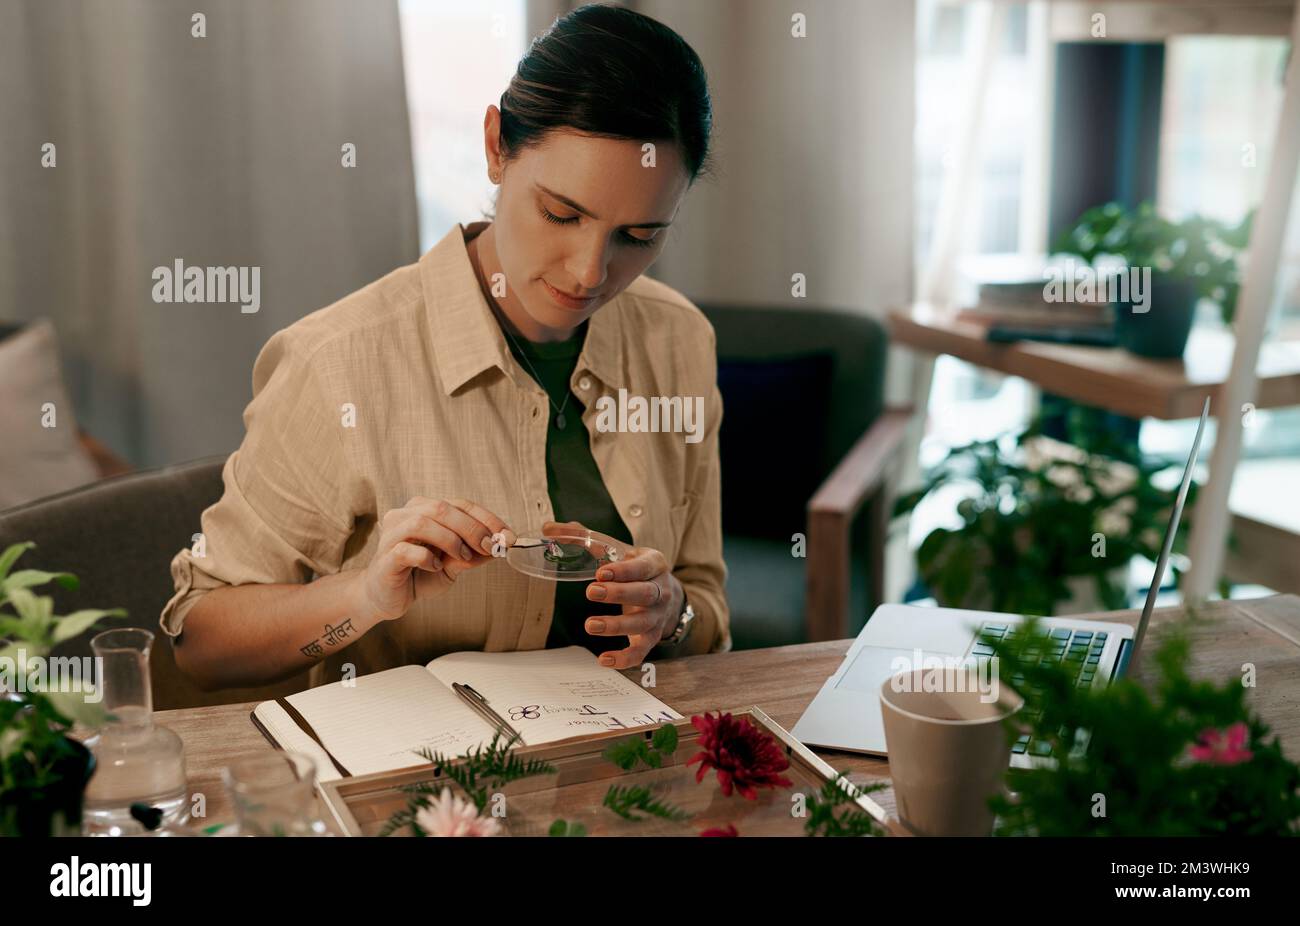 Mit Kreativität sehen Sie über die Norm hinaus. Eine attraktive, junge Floristin, die auf ihren Notizblock schreibt, während sie eine Checkliste der Blumen in ihrem Laden erstellt. Stockfoto